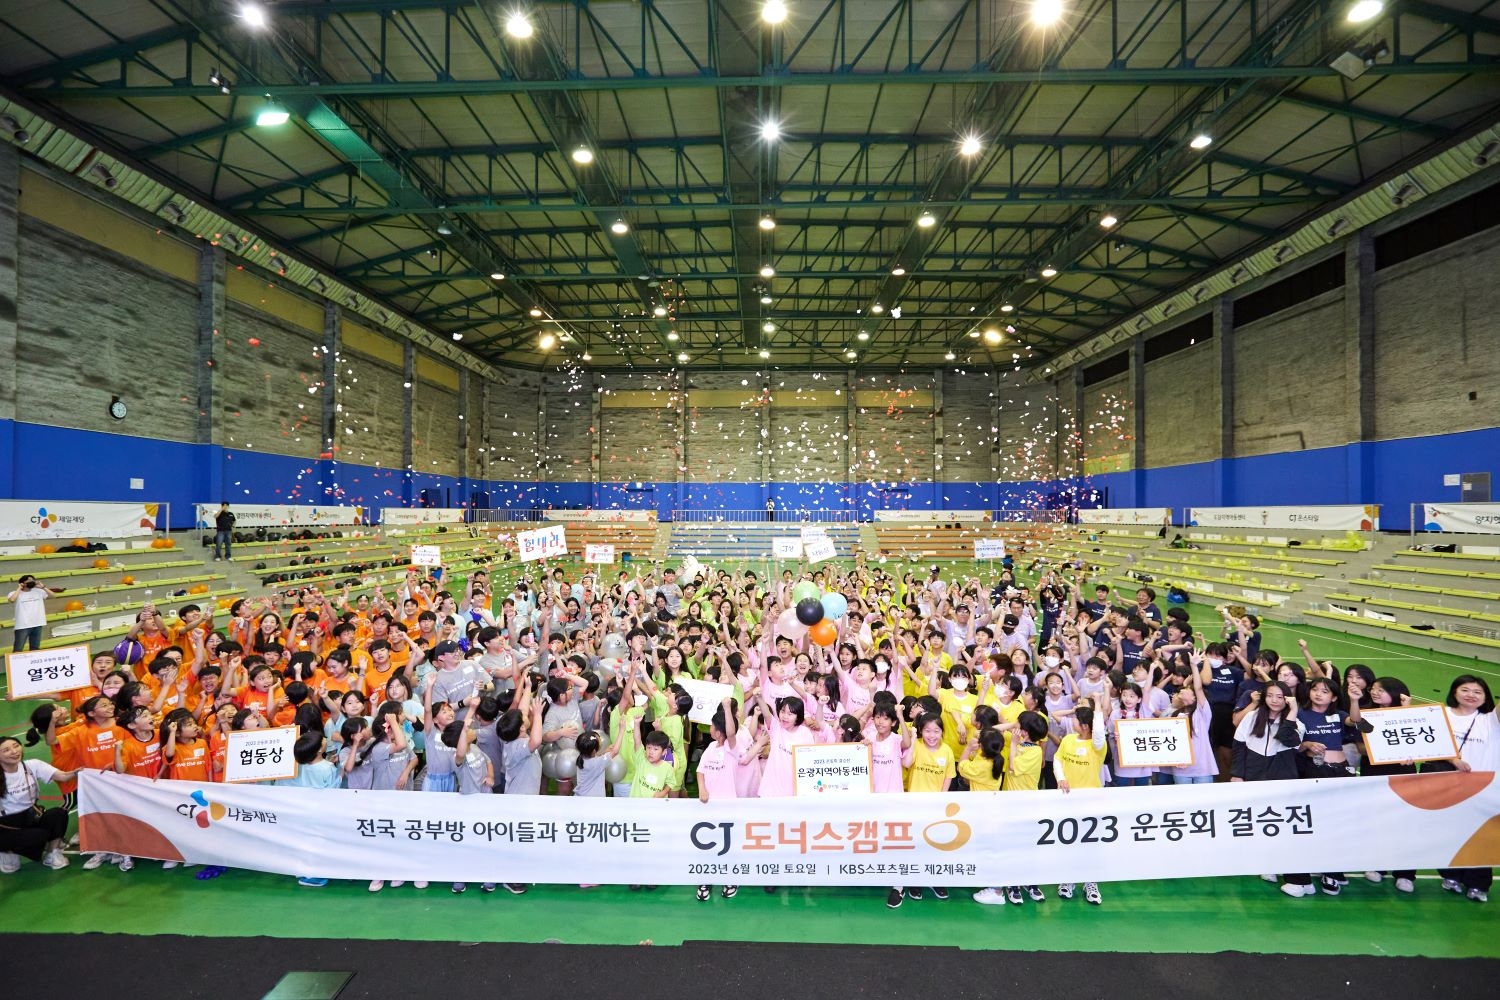 [생활경제 이슈] CJ나눔재단, 전국 지역아동센터 아이들과 함께하는 ‘CJ도너스캠프 운동회’ 성료 外